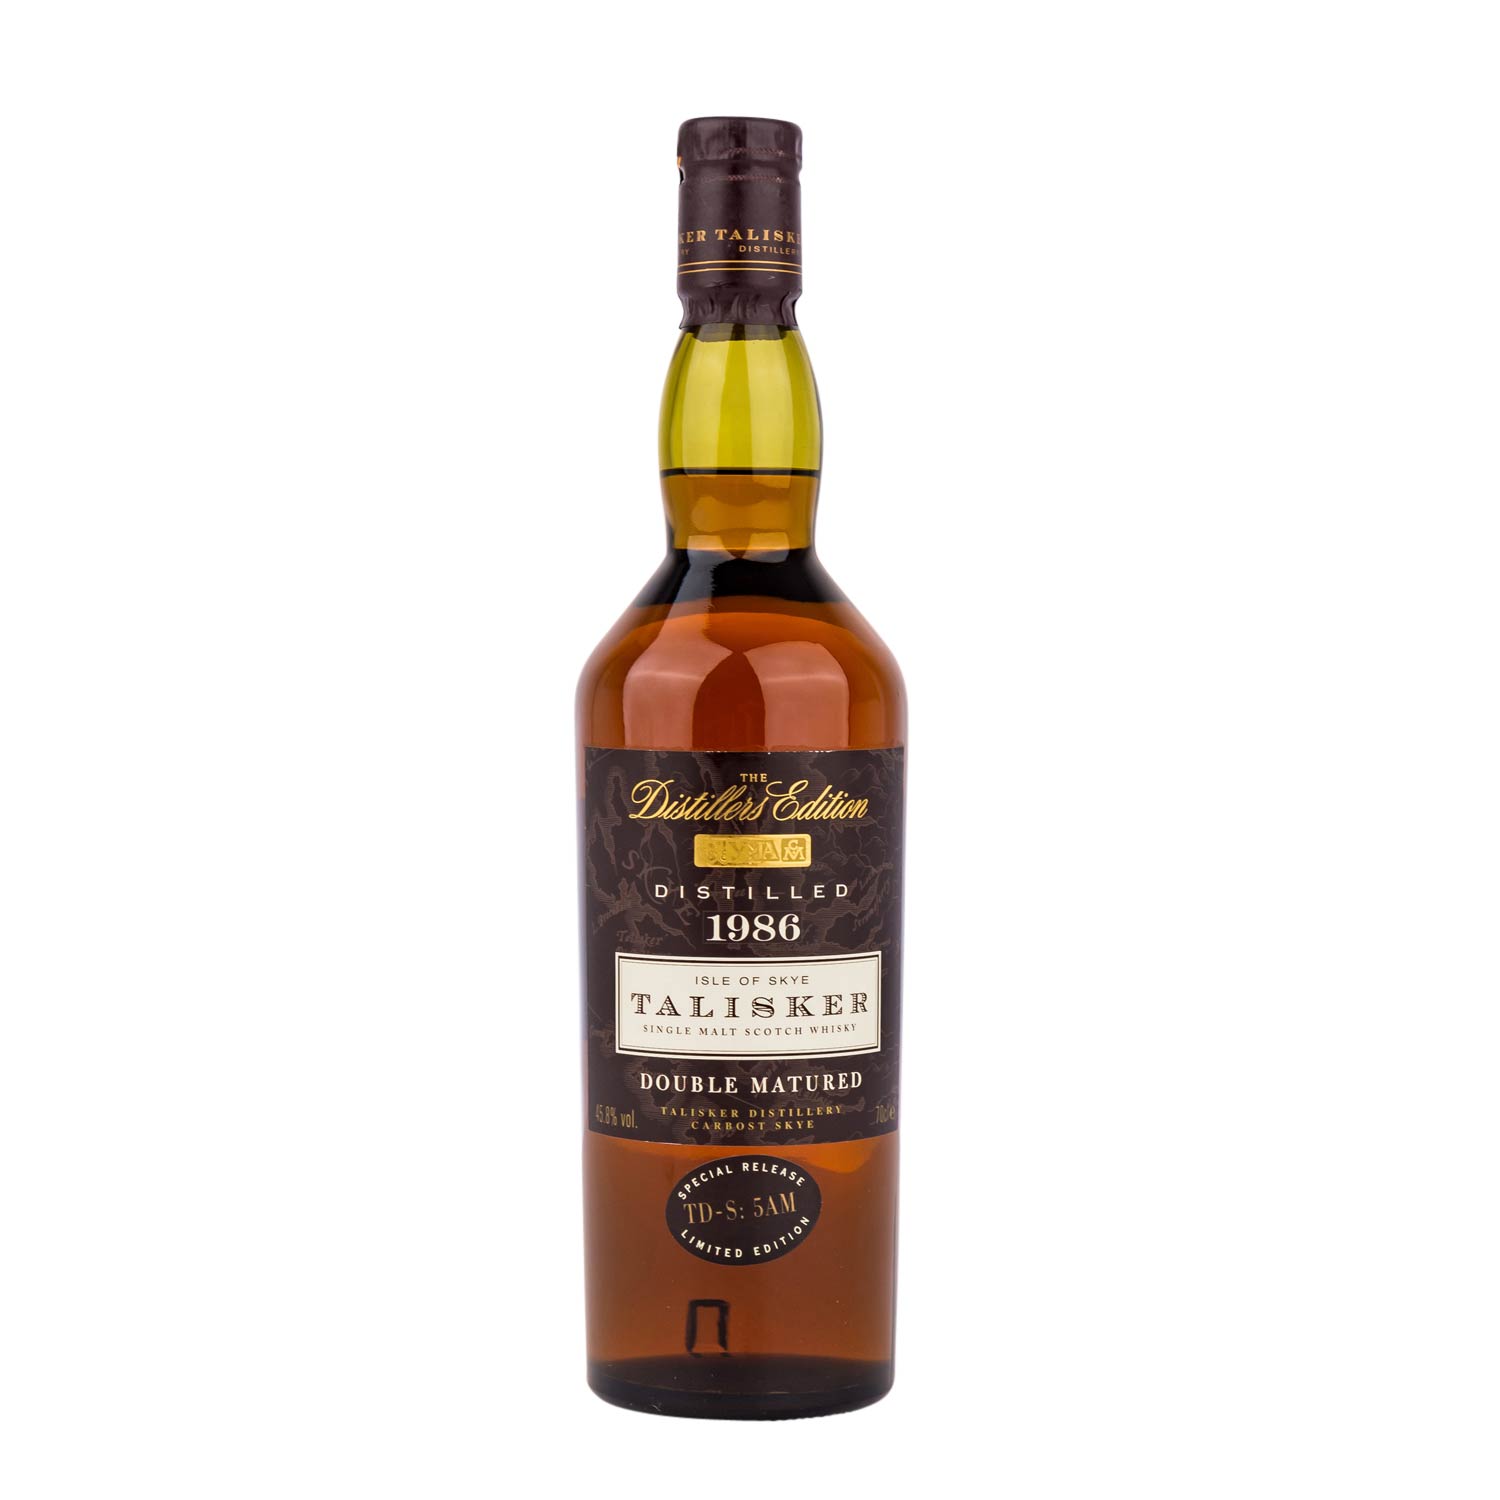 TALISKER 'The Distillers Edition' Single Malt Scotch Whisky, 1986Region: Islands, Talisker